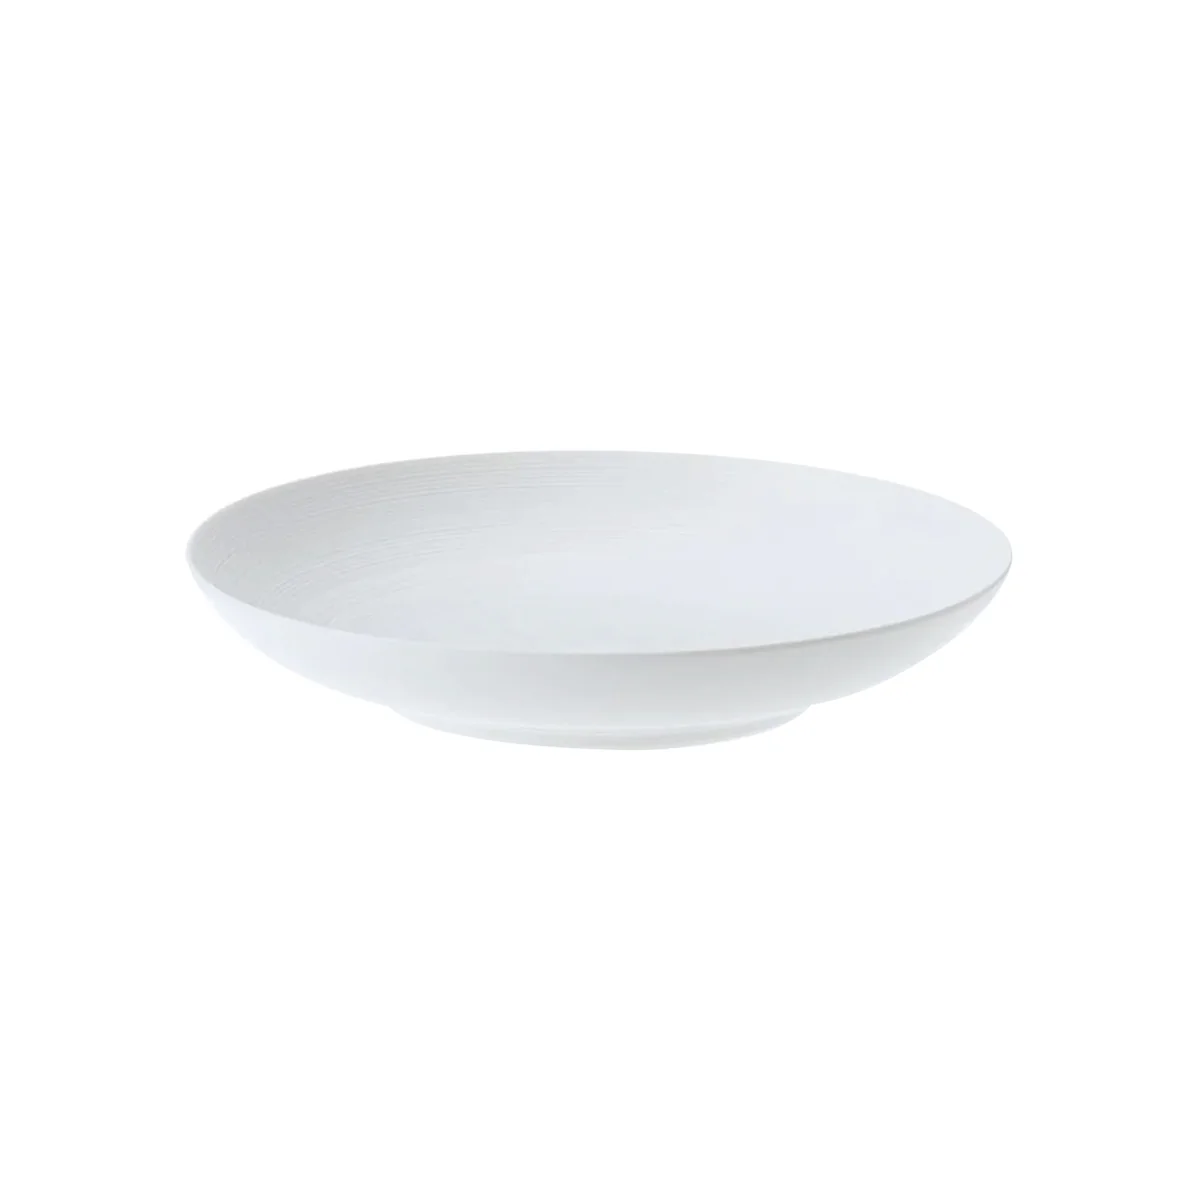 HEMISPHERE White Satin - Pasta plate MM